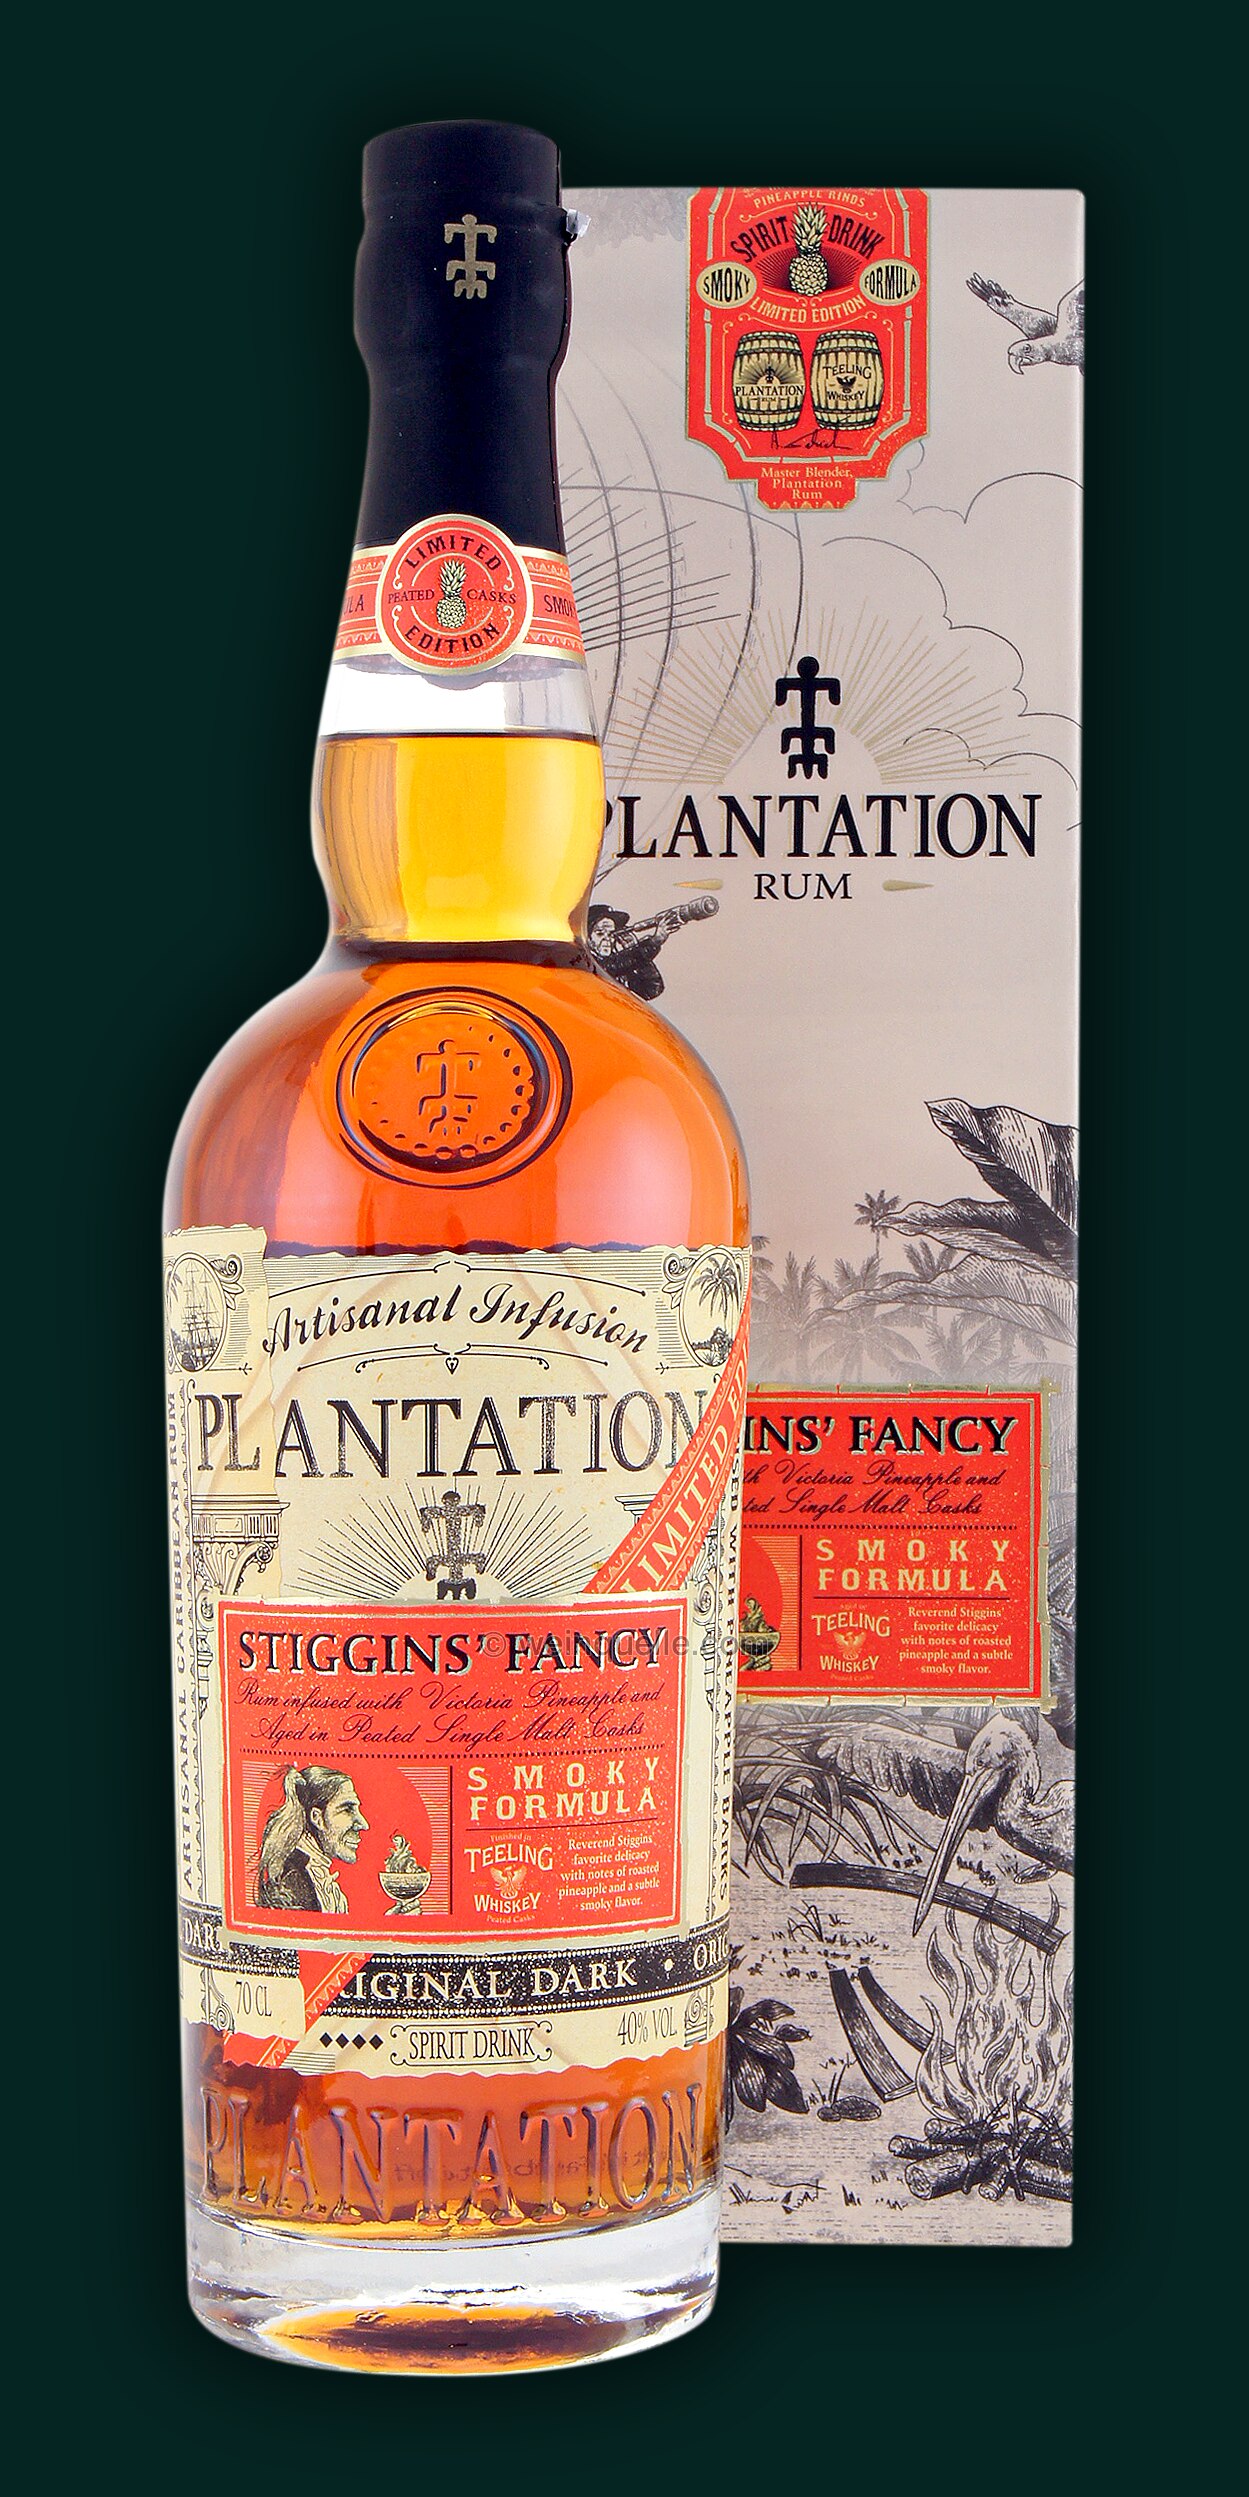 Plantation Pineapple Stiggins Fancy Smoky - Weinquelle Formula Lühmann